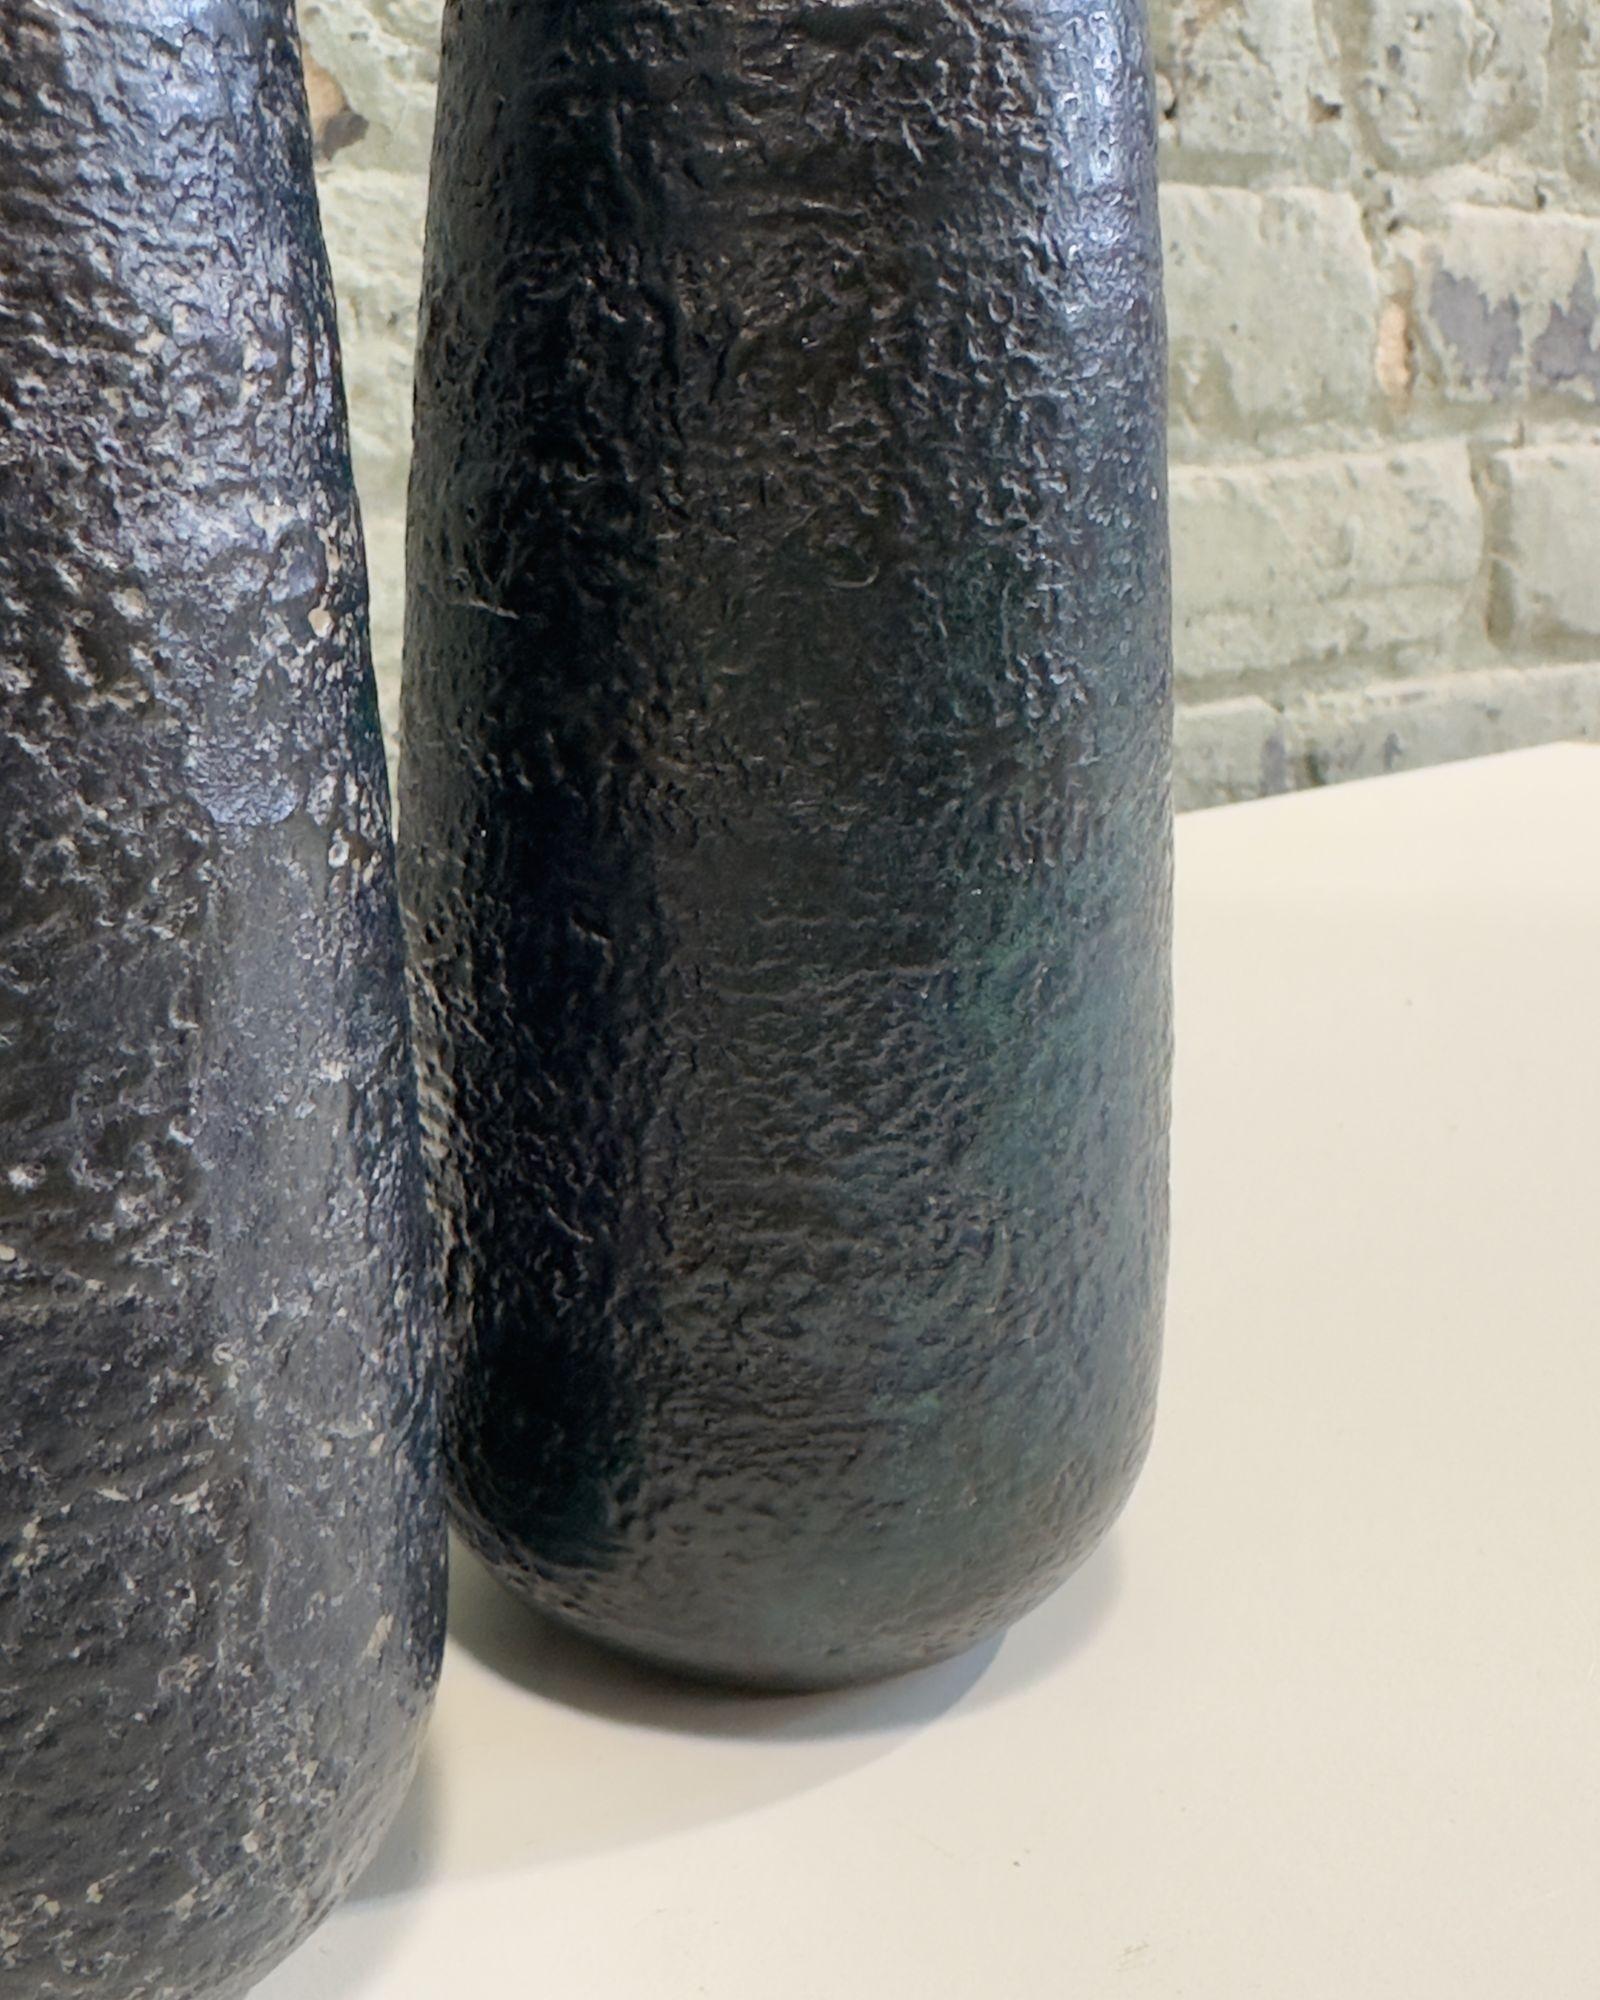 Japanese Craftsman Bronze Vases Black Volcanic Patinated Enamel, Japan 1930's For Sale 3